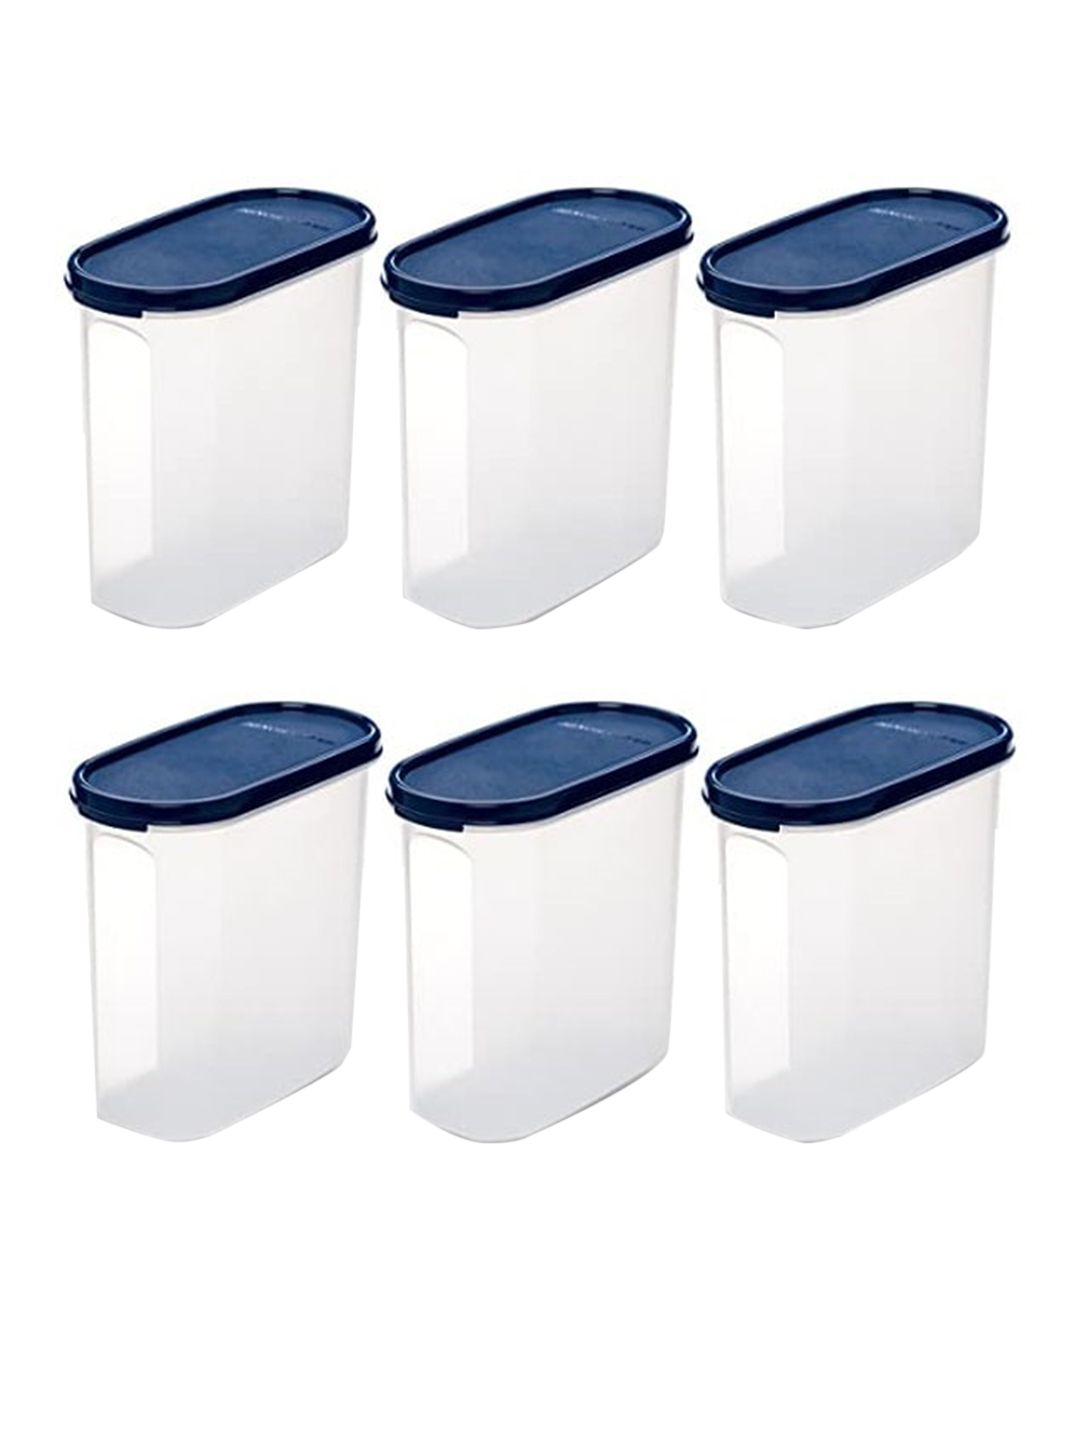 SignoraWare Set of 6 Blue & Transparent Plastic Kitchen Storage Container Price in India